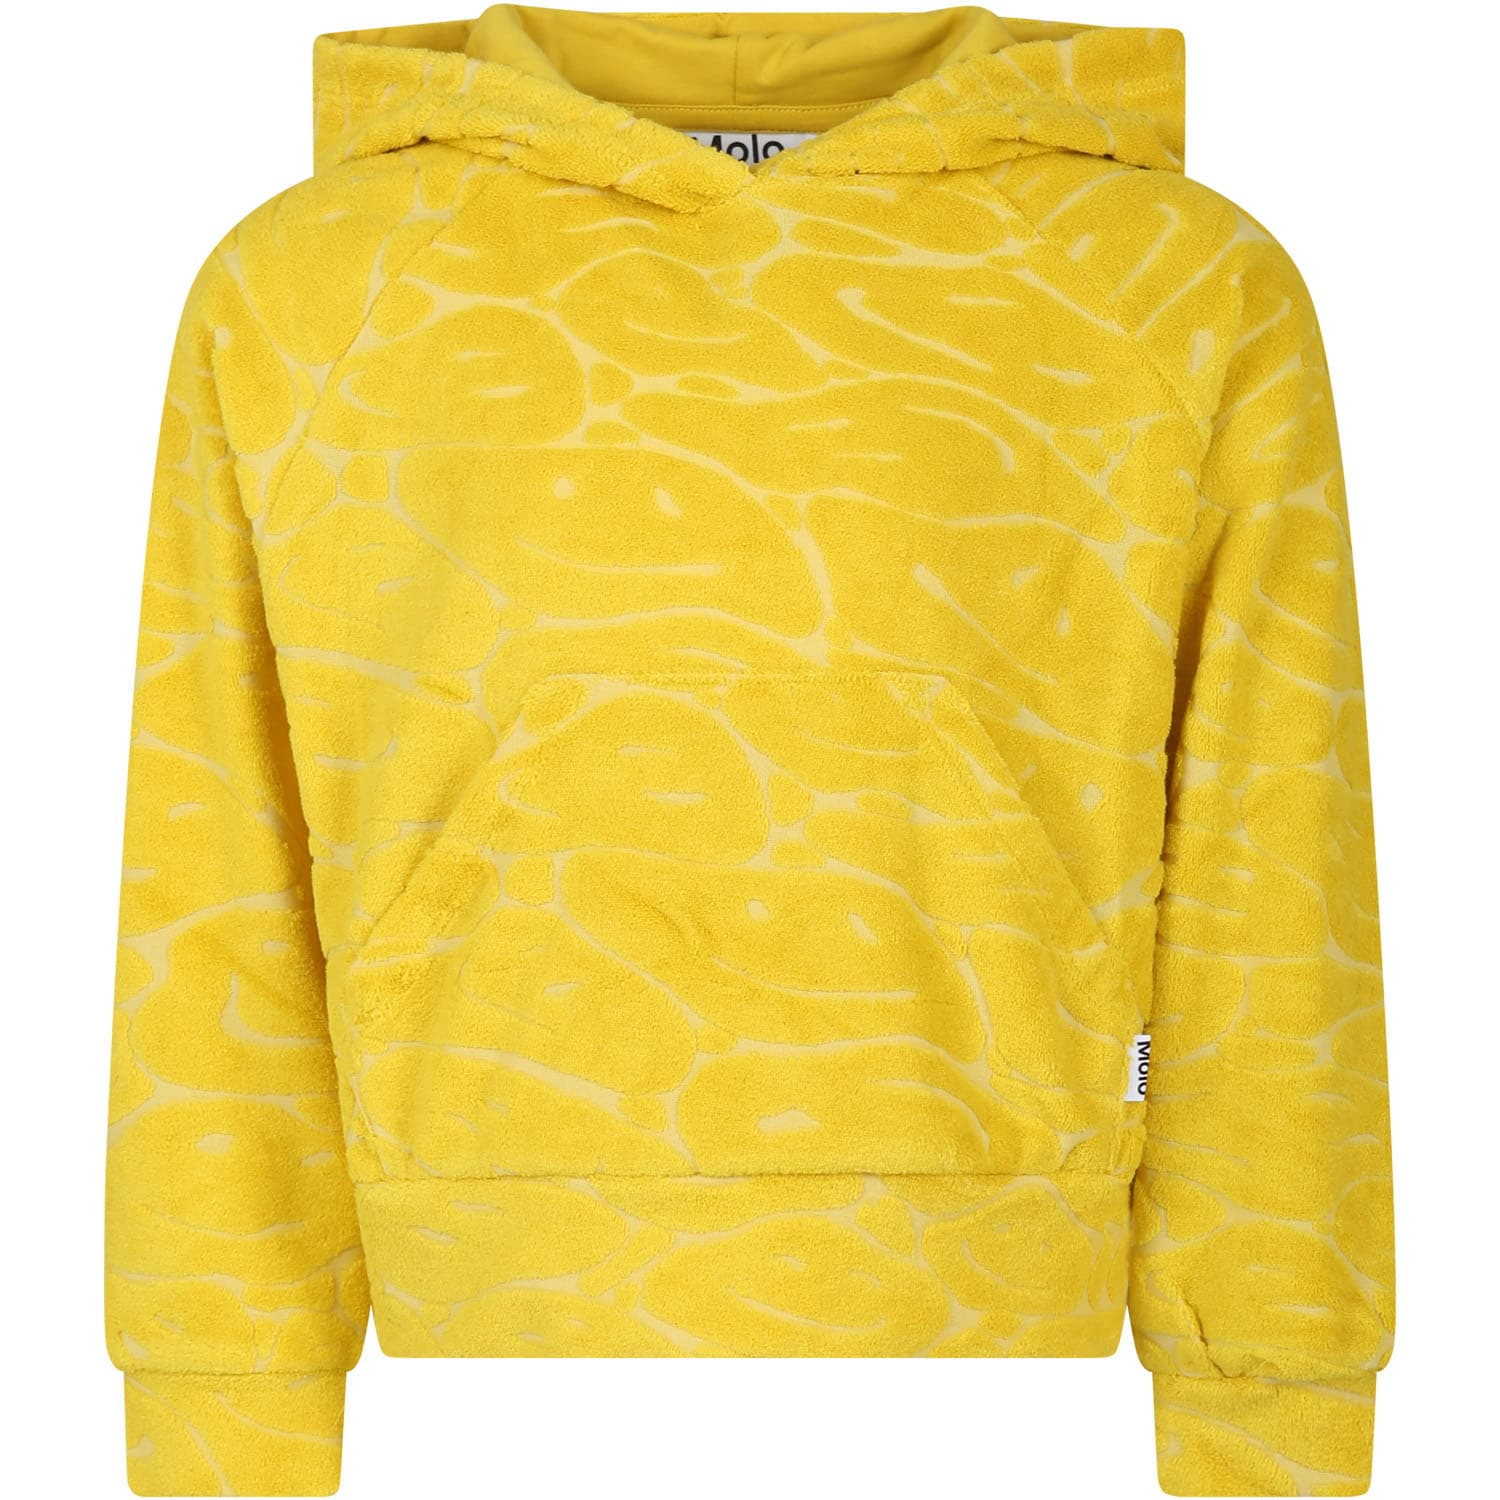 Molo Kids' Yellow Sweatshirt For Girl With Smiley